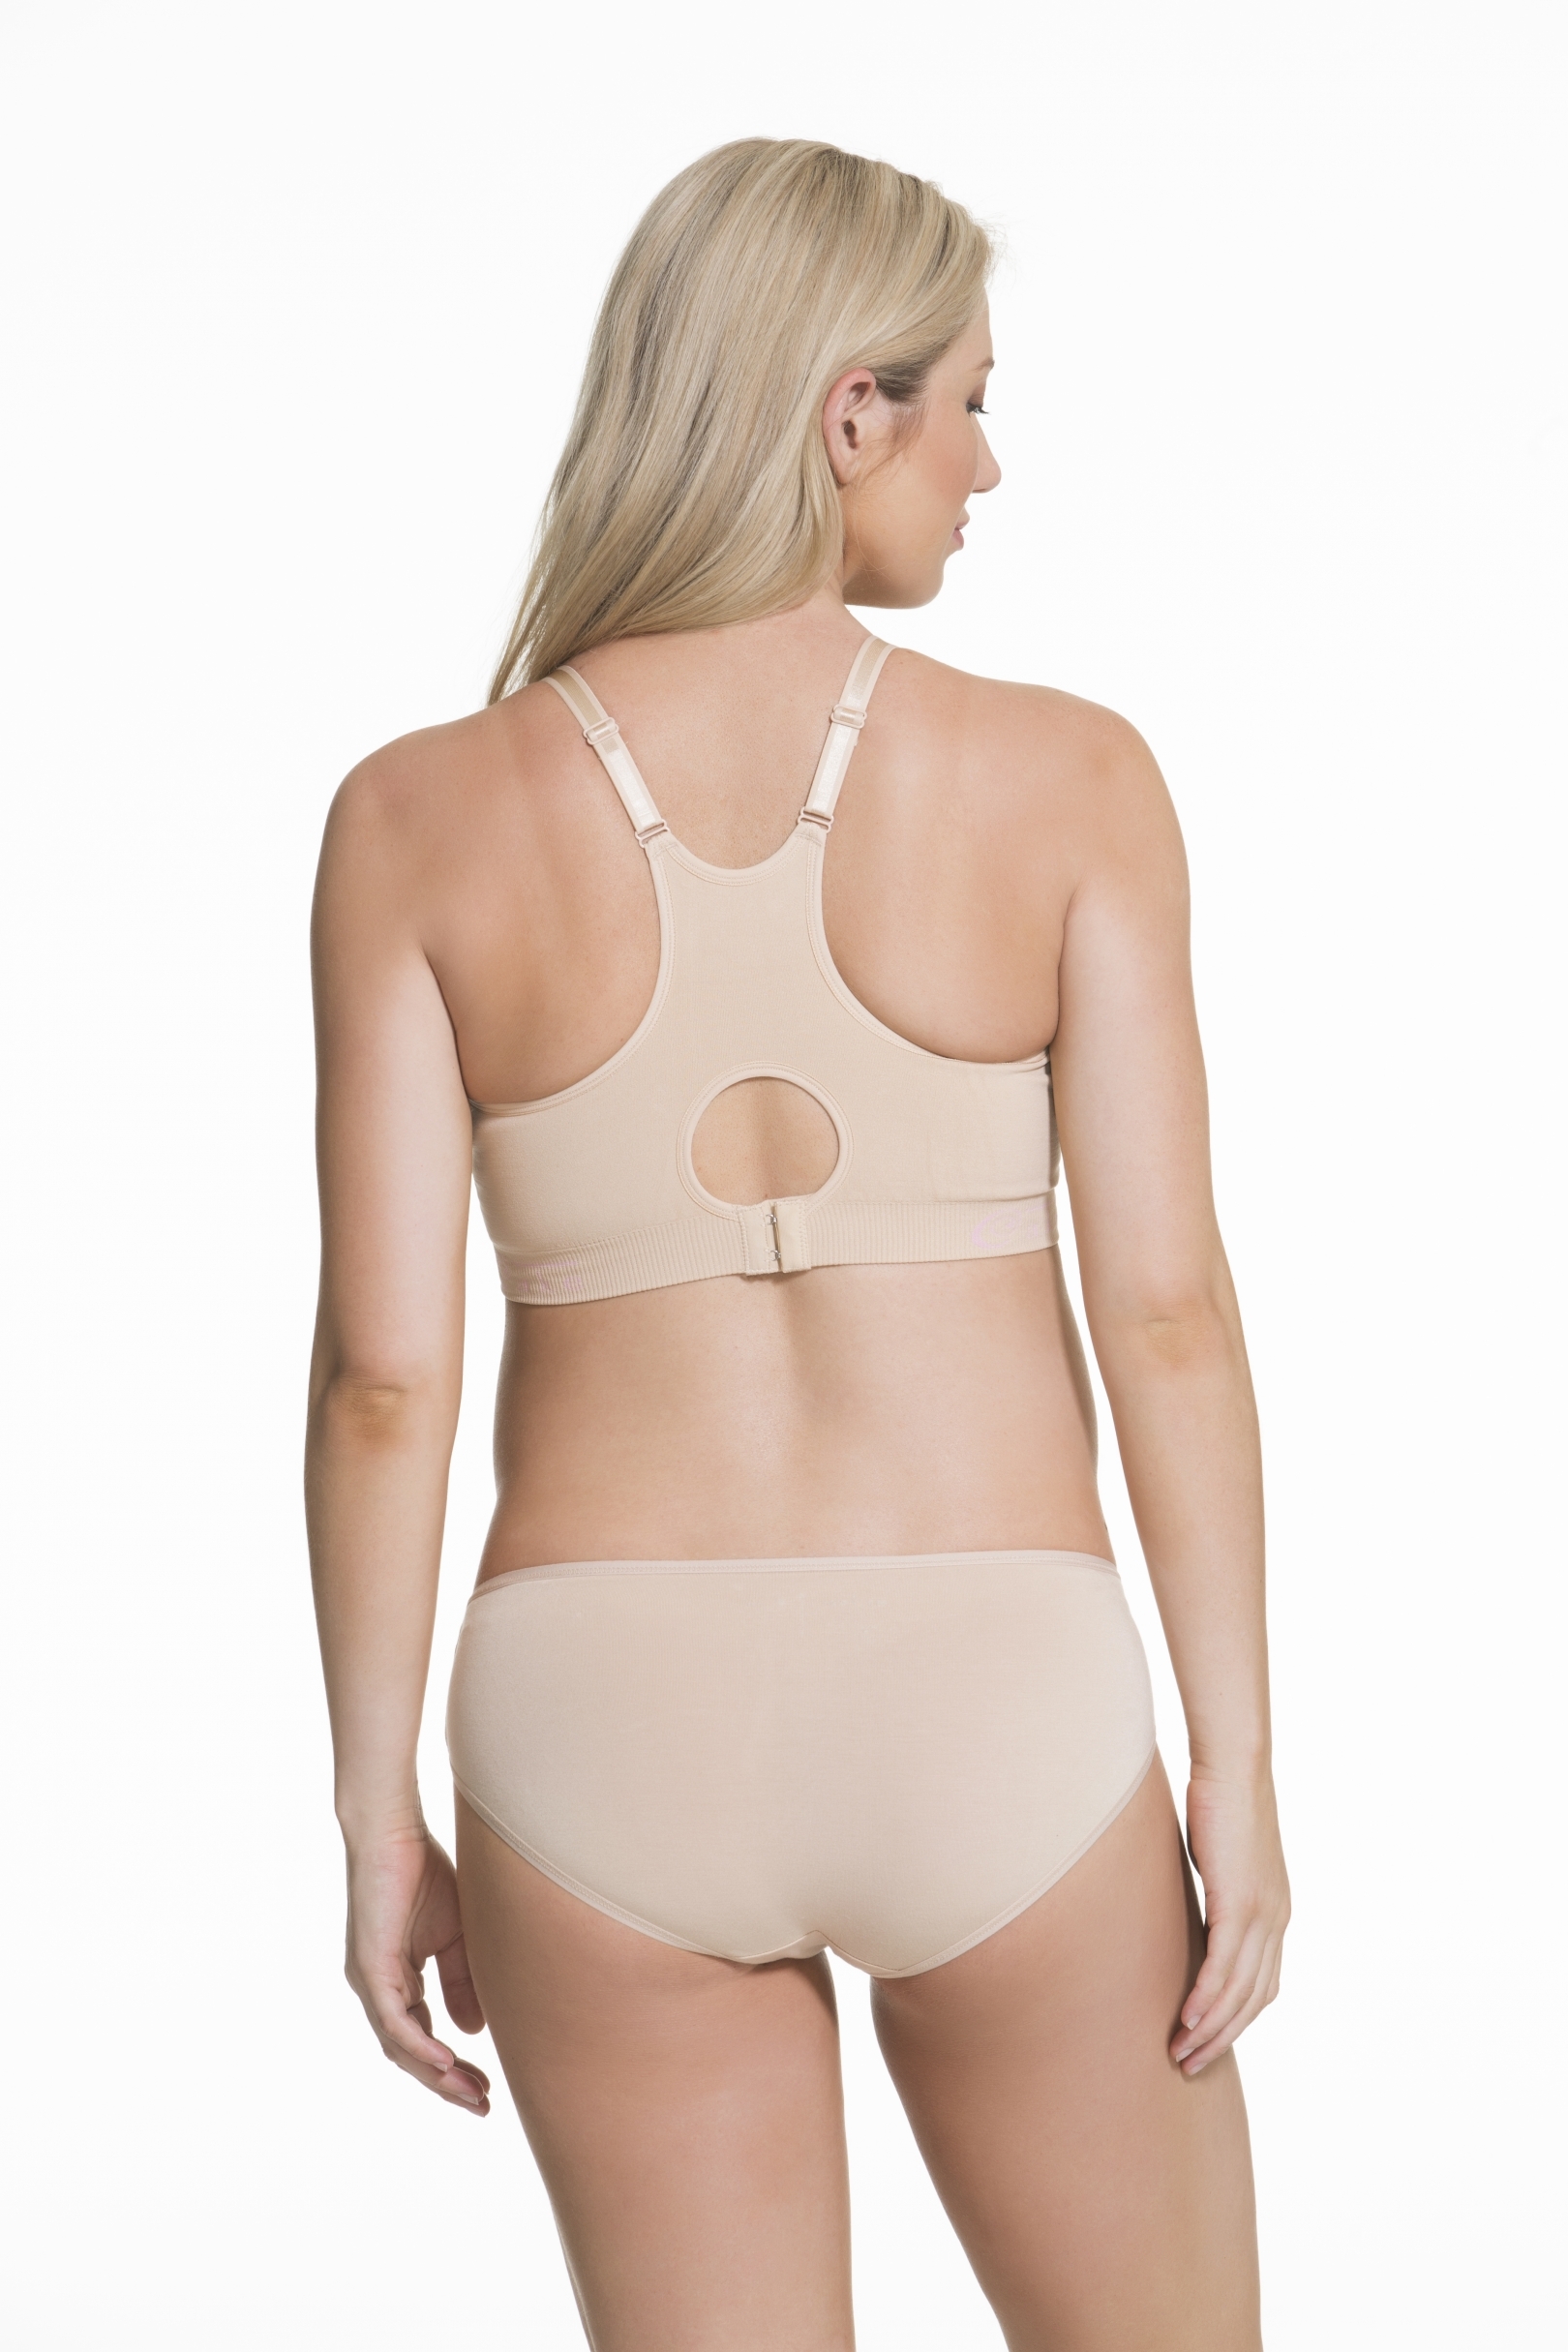 Chantelle Nursing bras - Buy online at